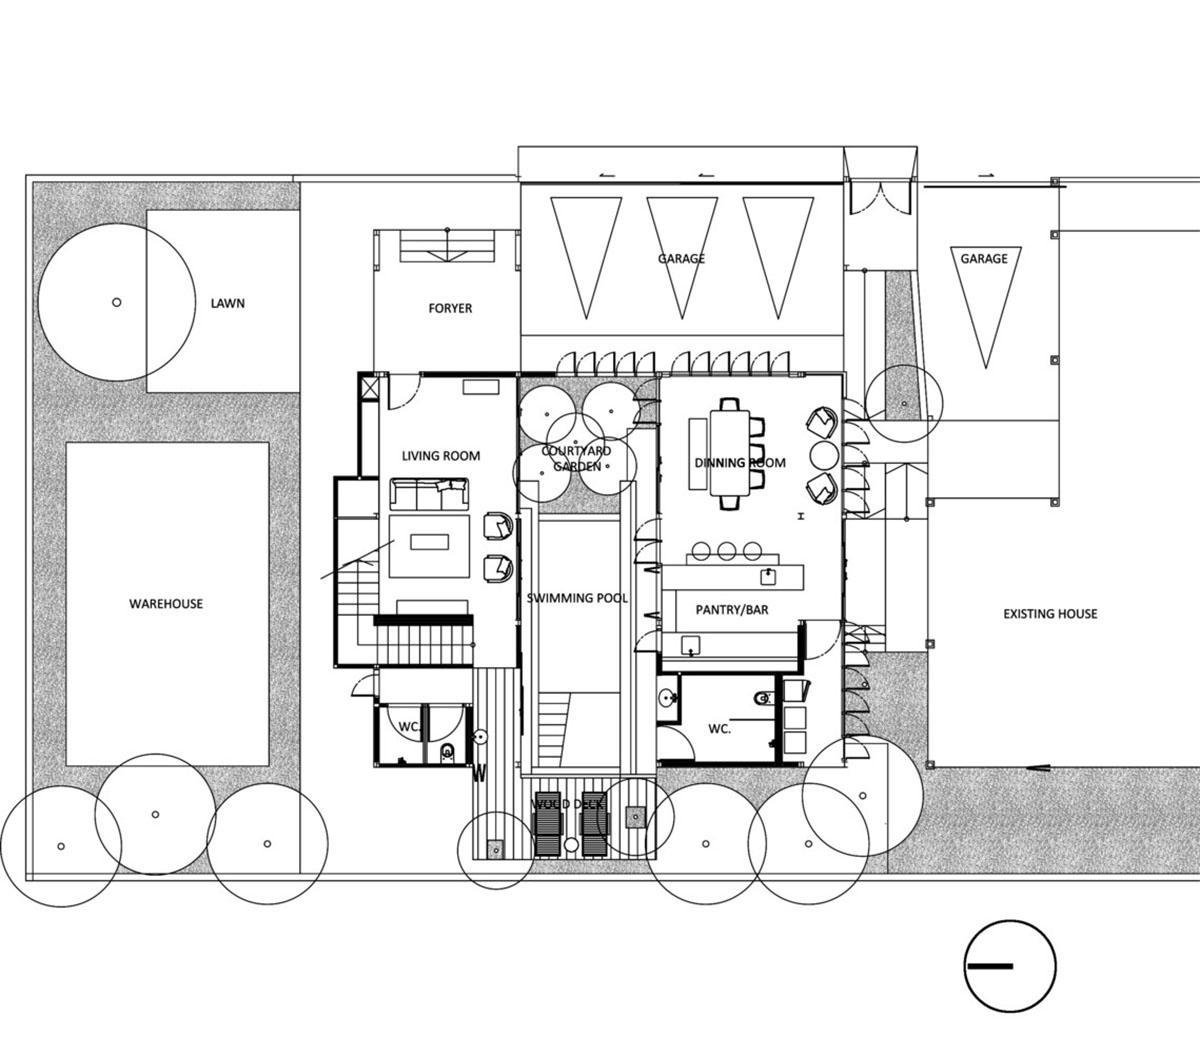 Artisan House - Thử nghiệm kết hợp vật liệu và thủ công địa phương | Proud Design